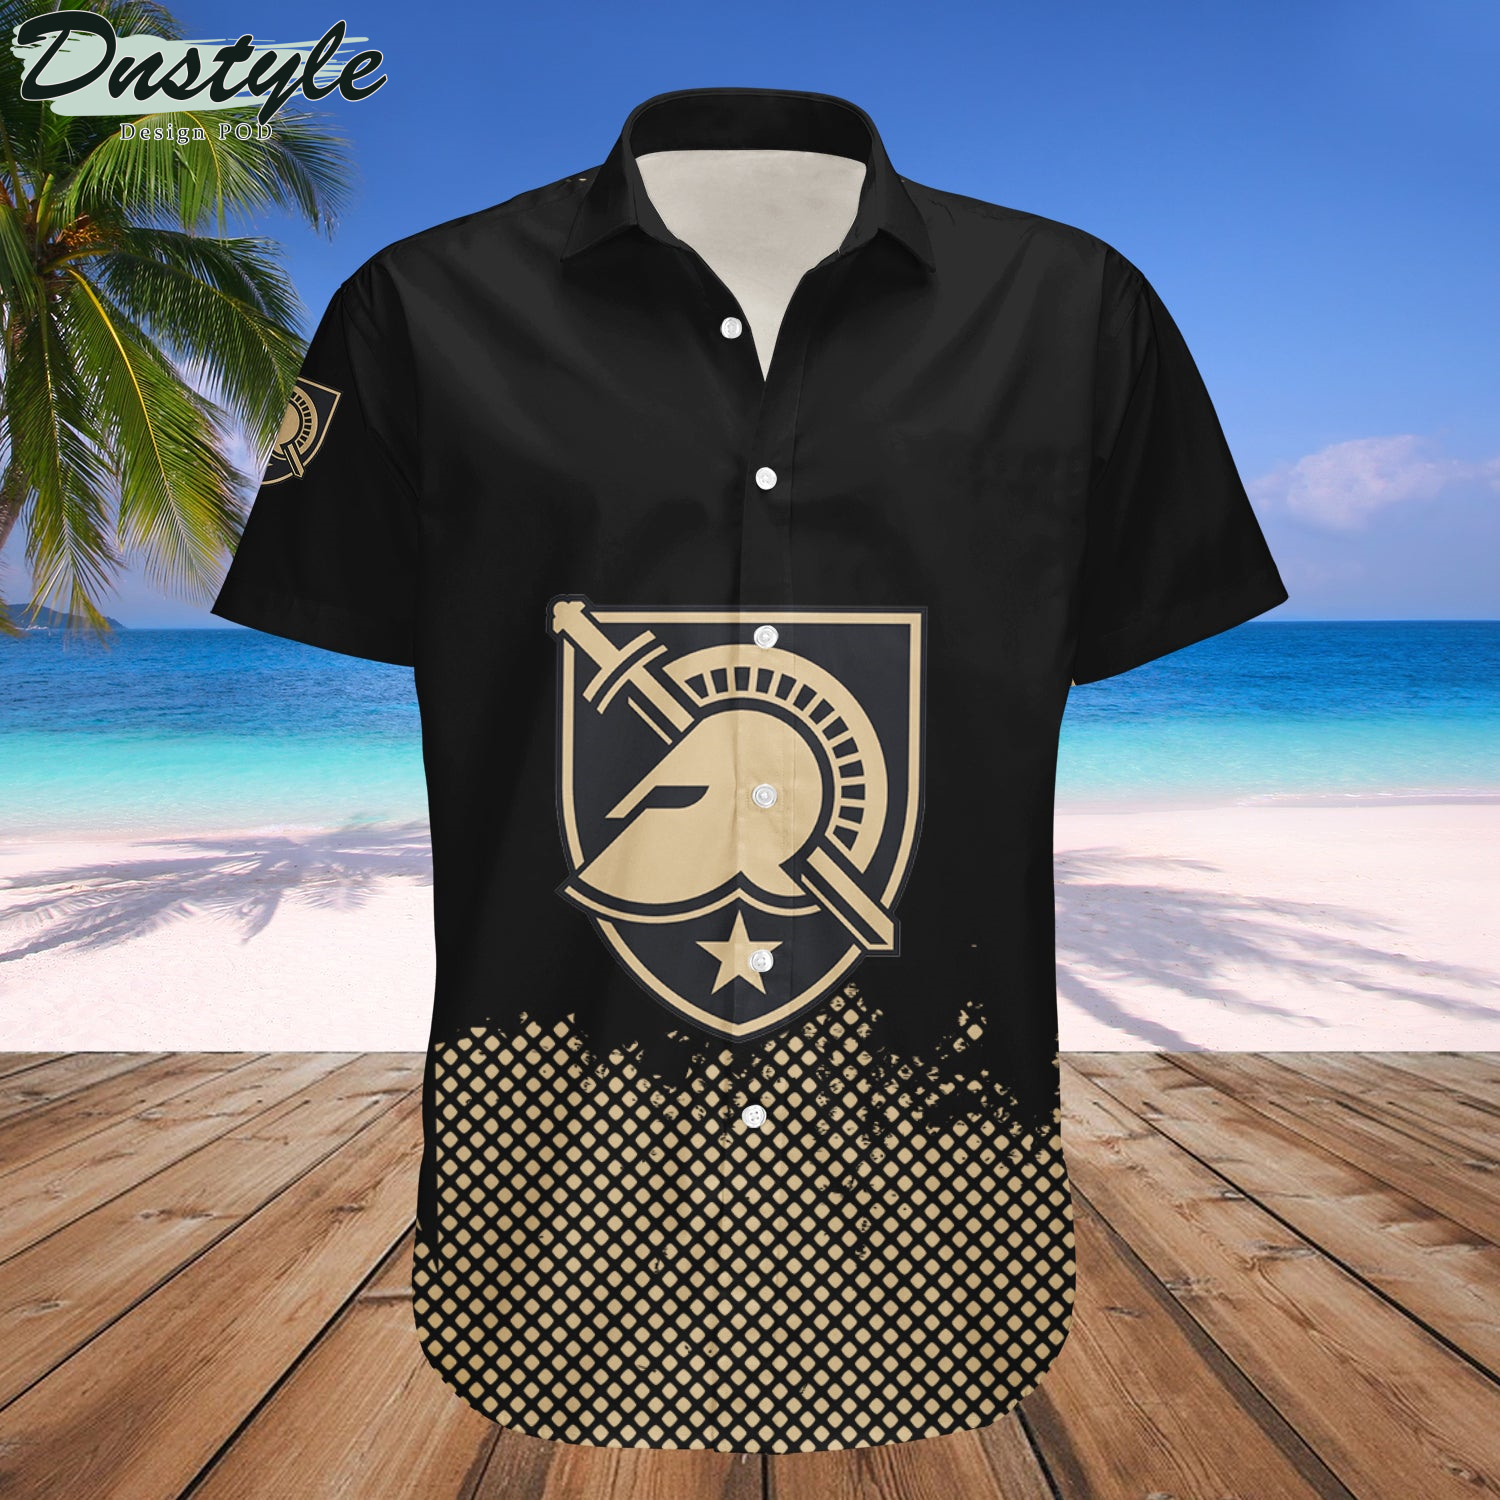 Army Black Knights Basketball Net Grunge Pattern Hawaii Shirt